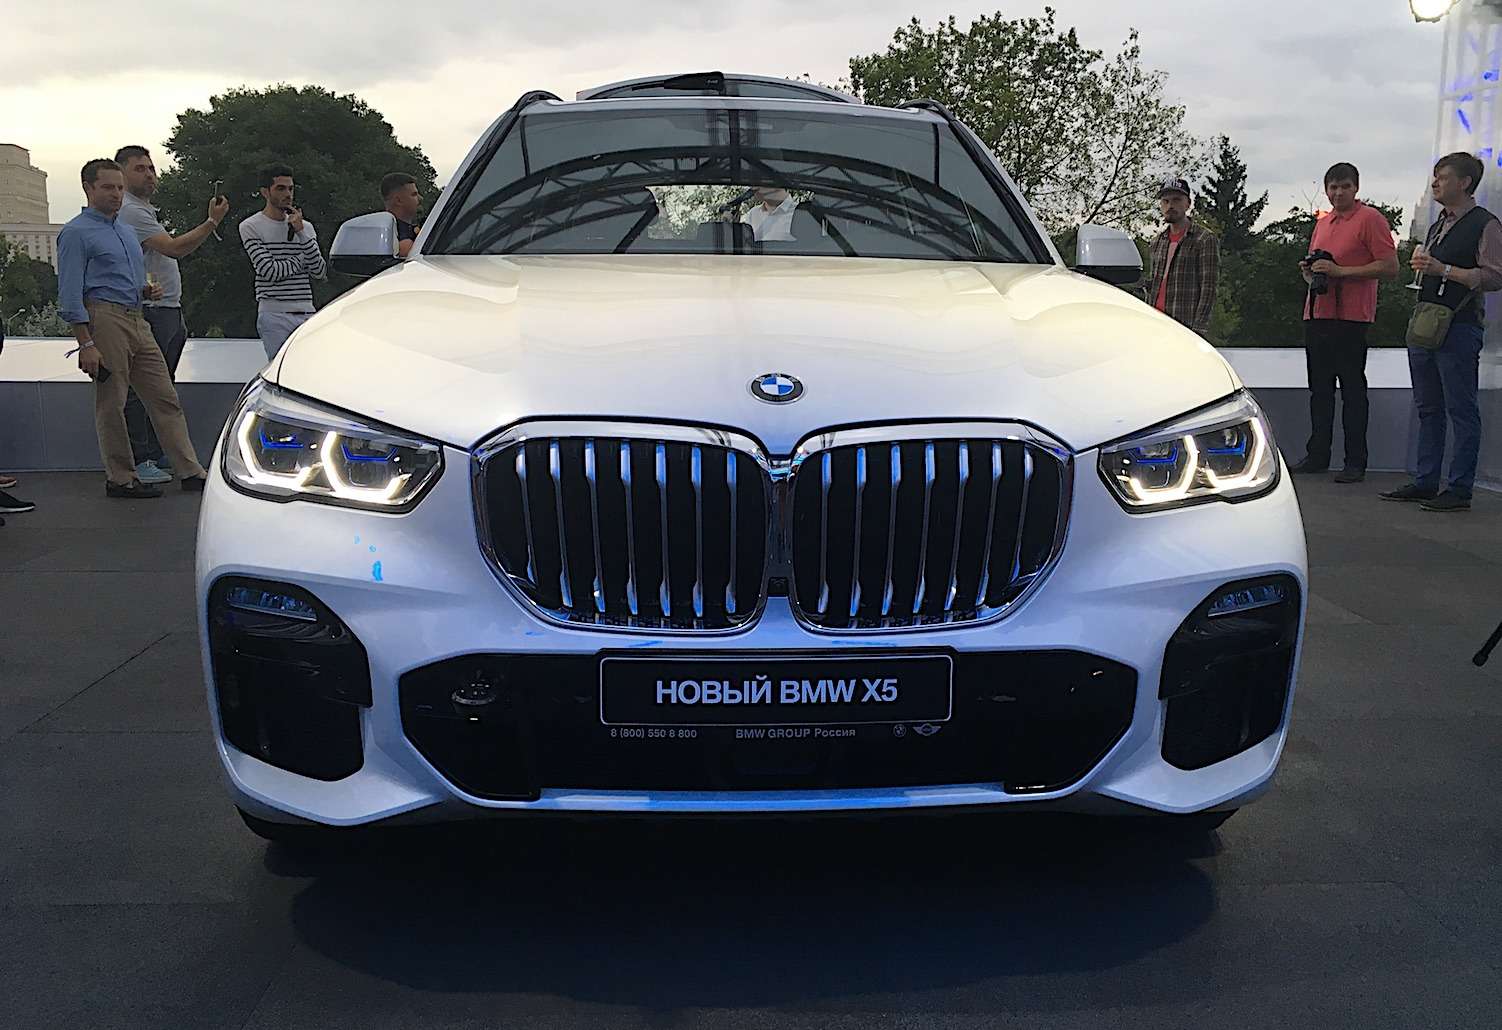 Абсолютно новый BMW X5 всплыл в Москве. Задолго до официальной премьеры! — фото 889843